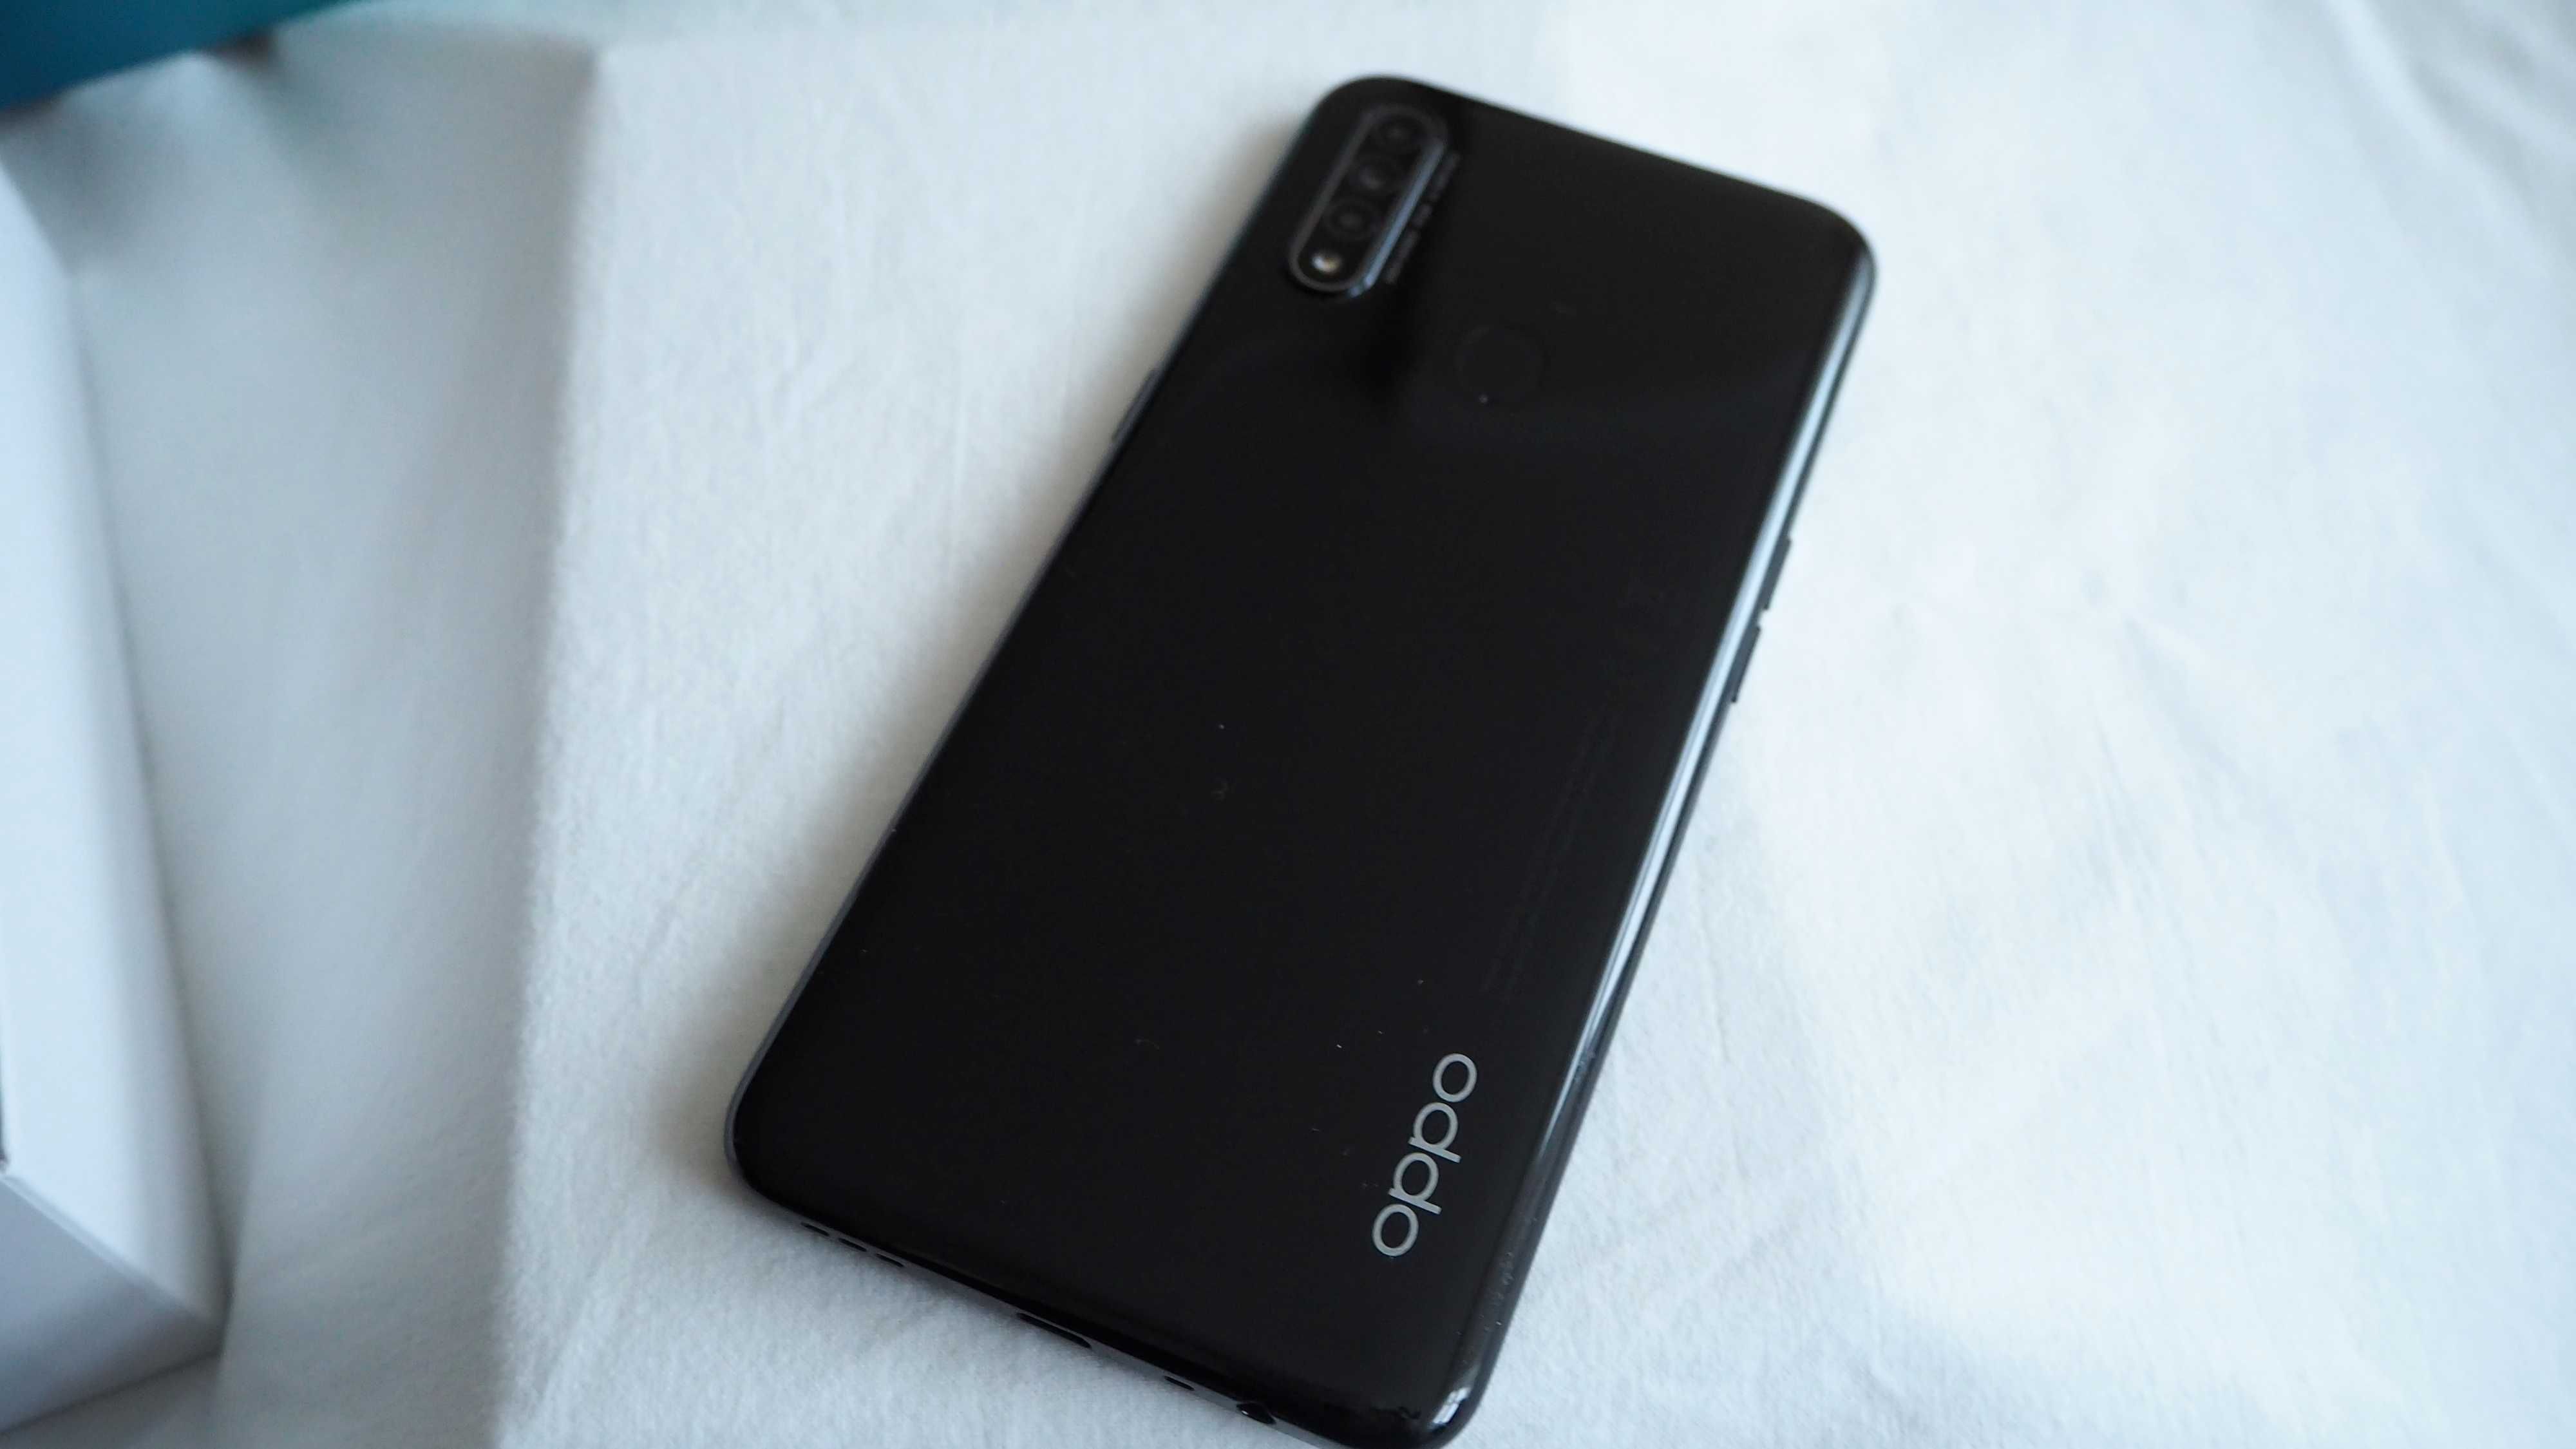 Telefon Oppo A31 4GB / 64GB gwarancja, paragon